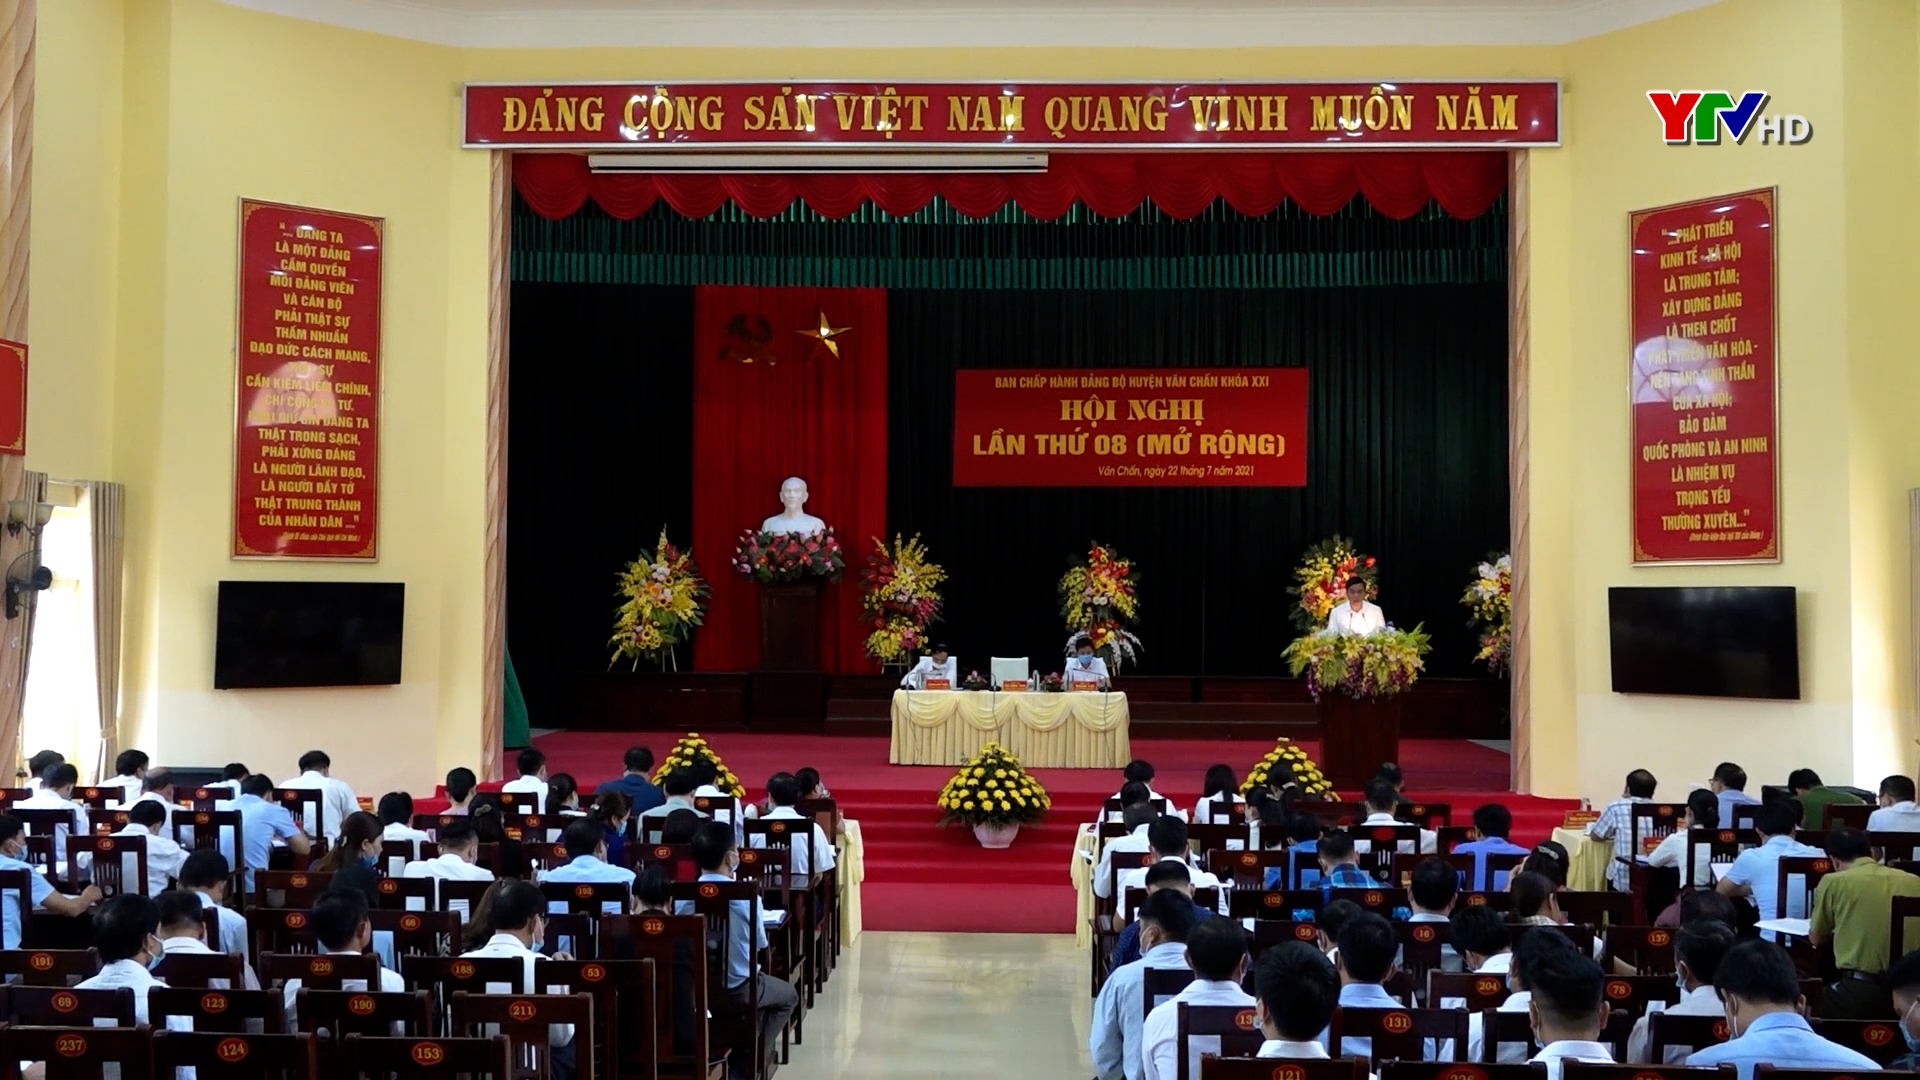 Hội nghị BCH Đảng bộ huyện Văn Chấn lần thứ 8 (mở rộng)